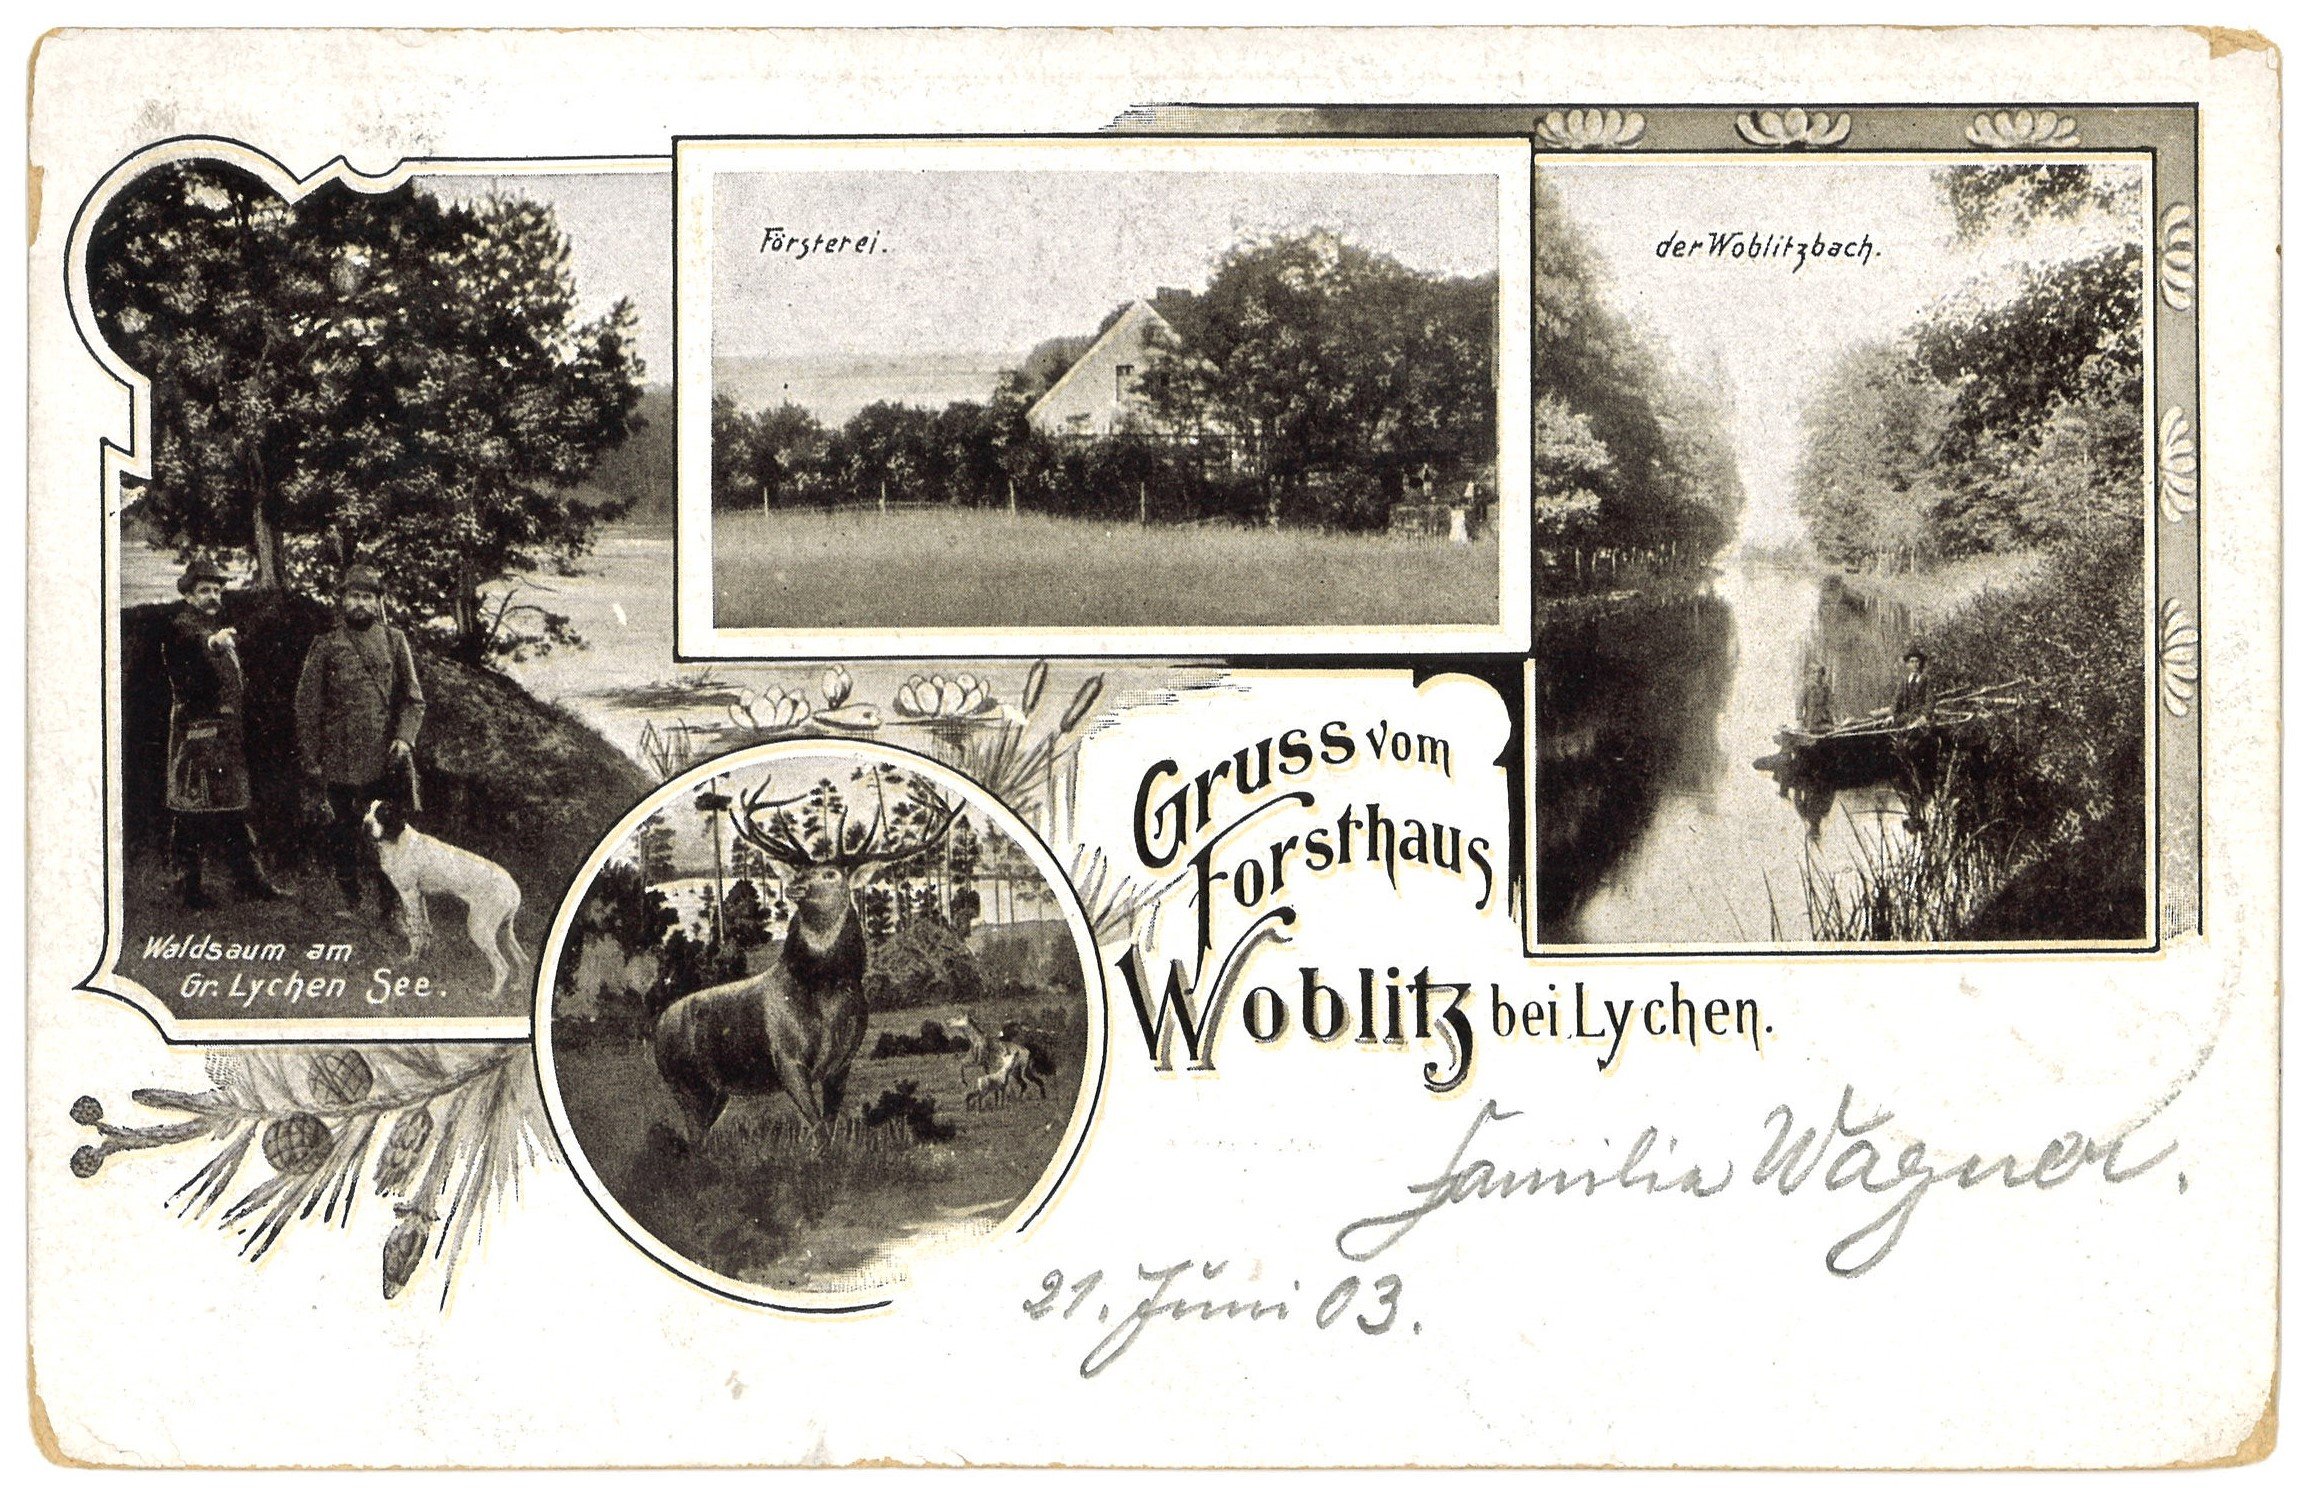 Lehnin: Waldweg mit Forsthaus (Landesgeschichtliche Vereinigung für die Mark Brandenburg e.V. CC BY)